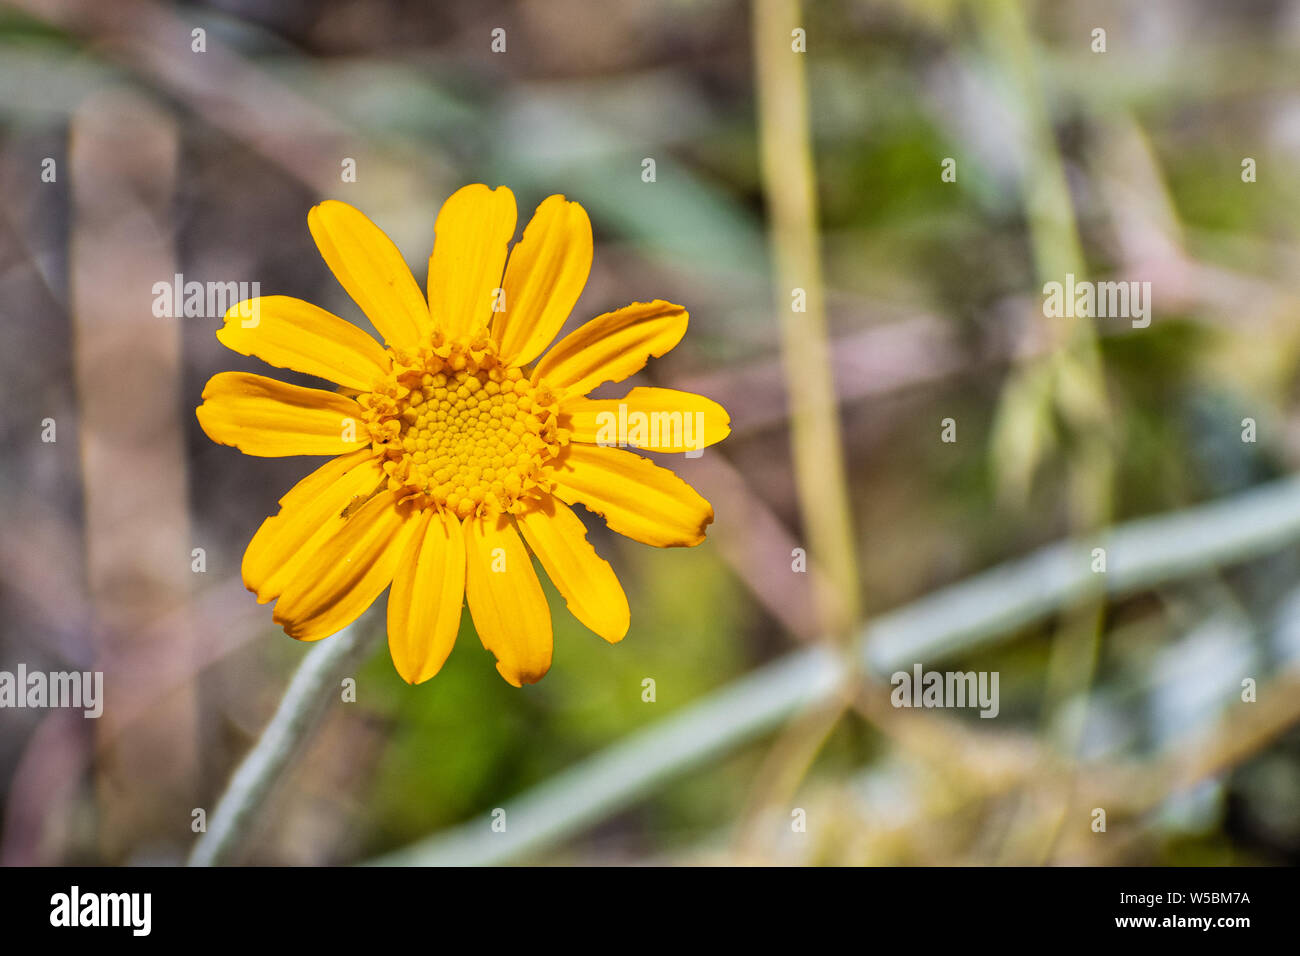 Common woolly sunflower (Eriophyllum lanatum) wildflower blooming Yosemite National Park, Sierra Nevada mountains, California Stock Photo